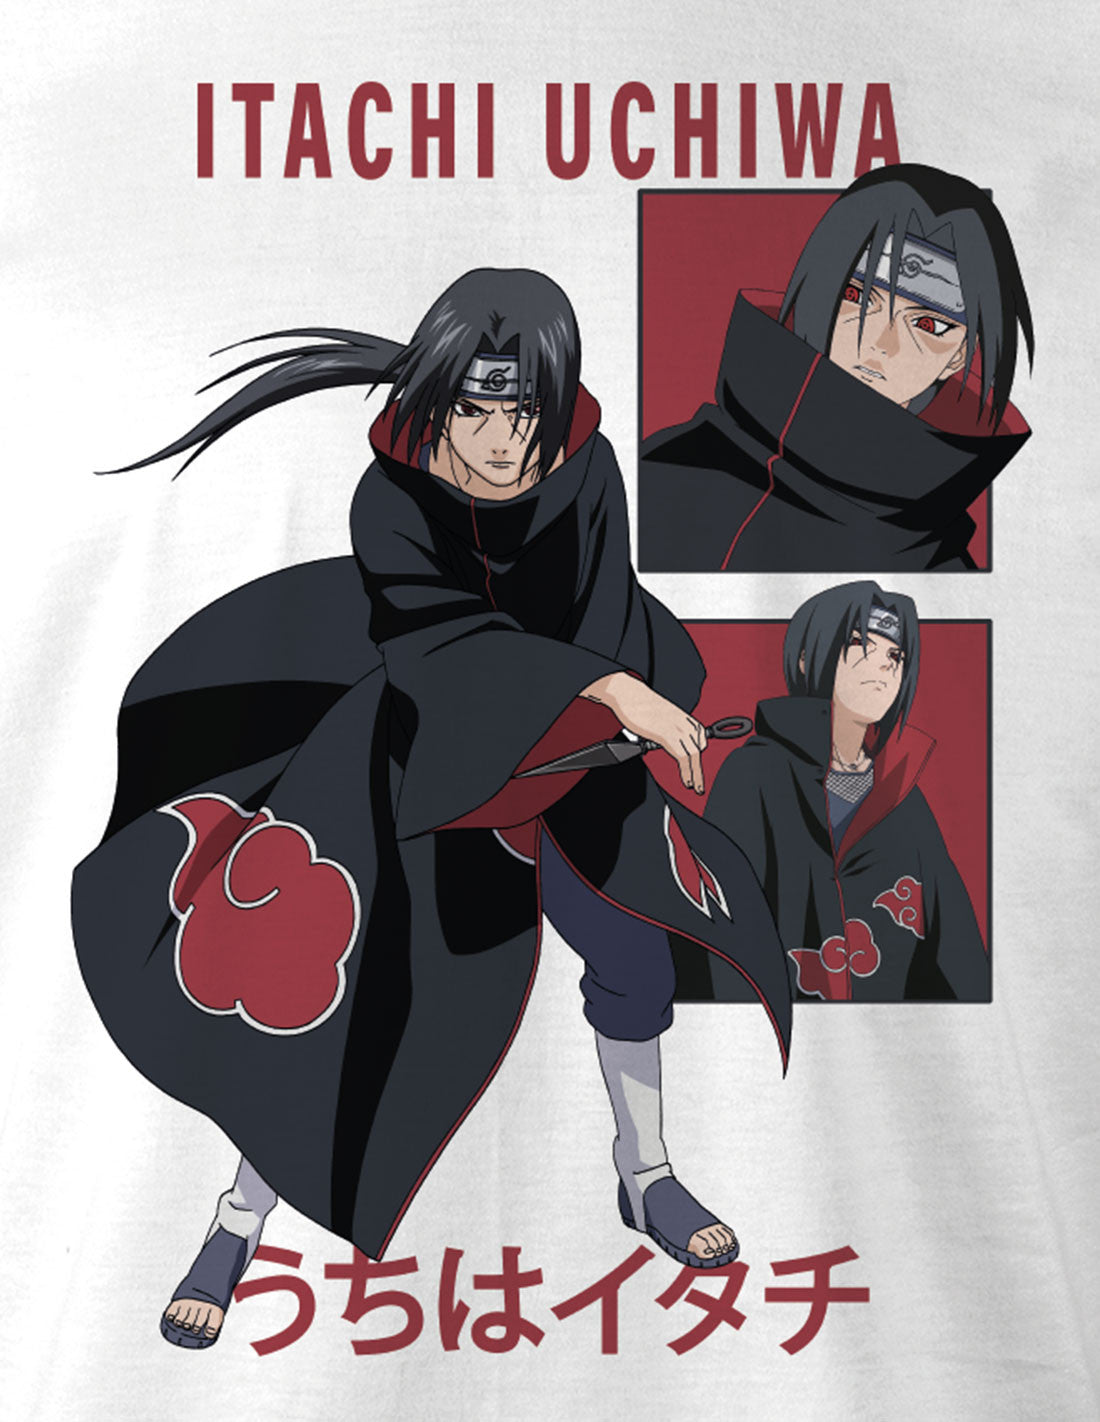 Naruto t-shirt - Itachi Uchiha